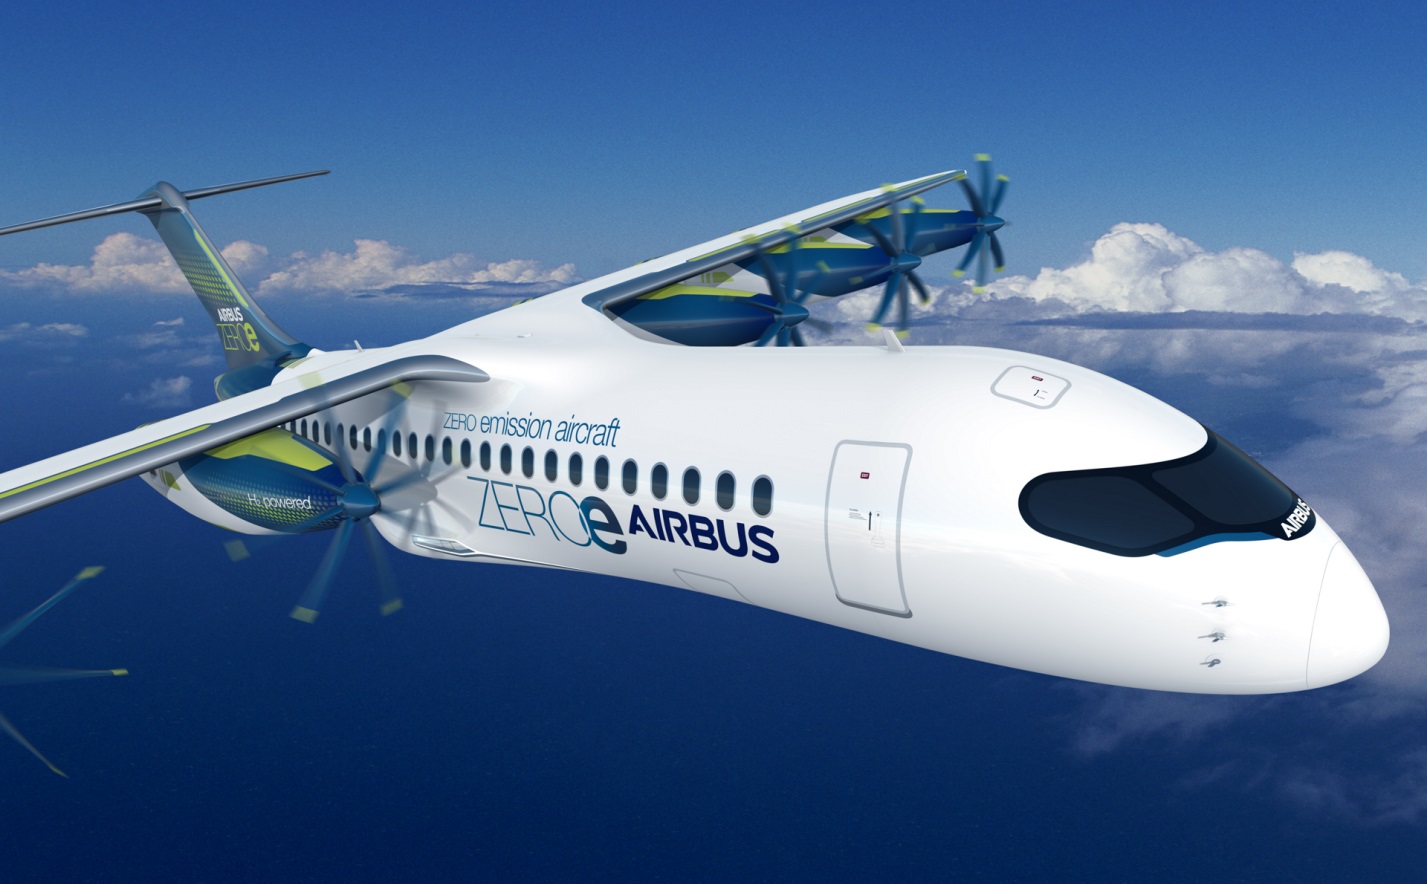 По результатам первого квартала текущего года прибыль аэрокосмической компании Airbus увеличилась до 1,22 миллиарда евро, сравнительно с 362 миллиона евро годом ранее.